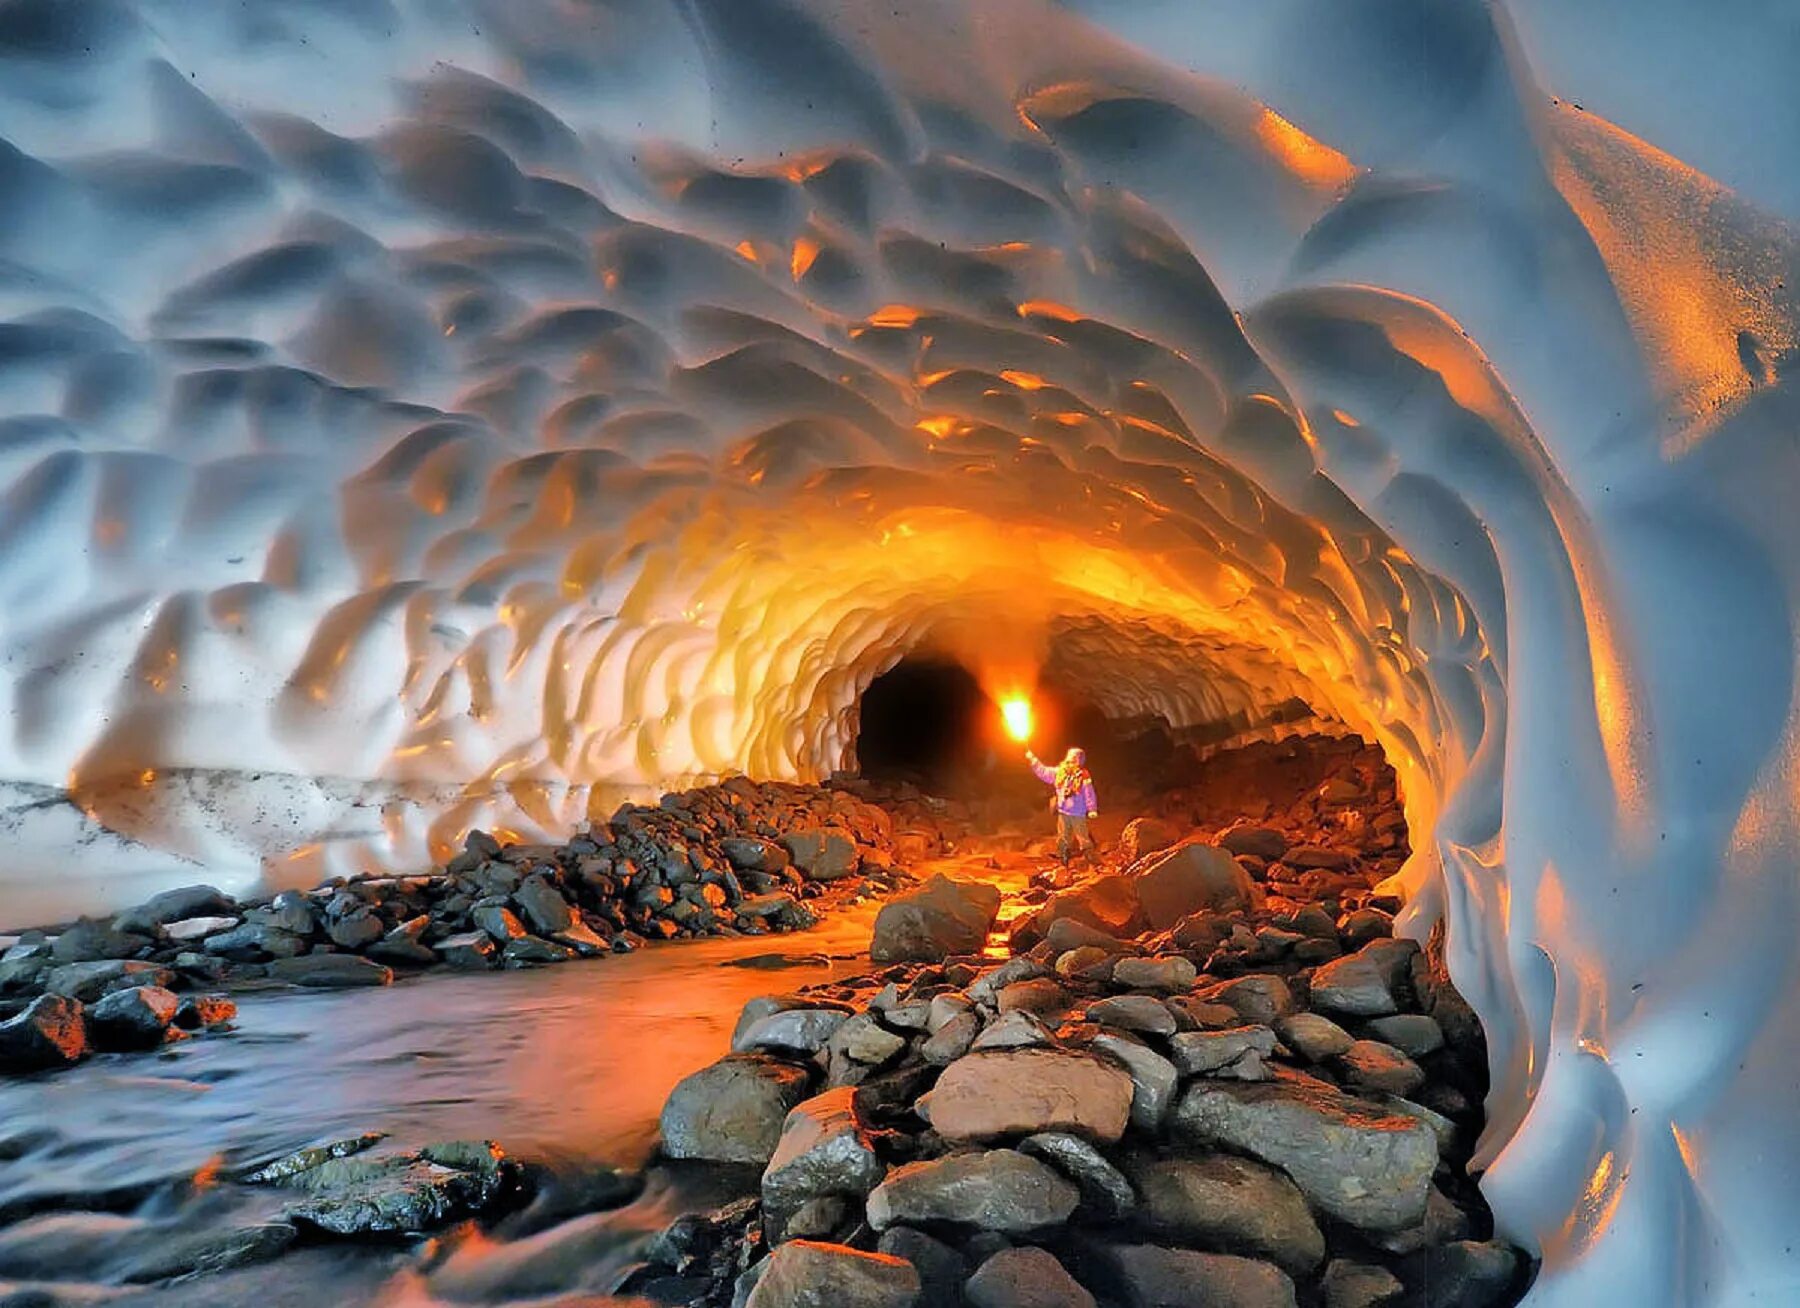 Невероятные условия. Лавовые пещеры вулкана Горелый. Вулкан Мутновский Ледяная пещера. Кунгурская Ледяная пещера. Лавовые пещеры Камчатка.